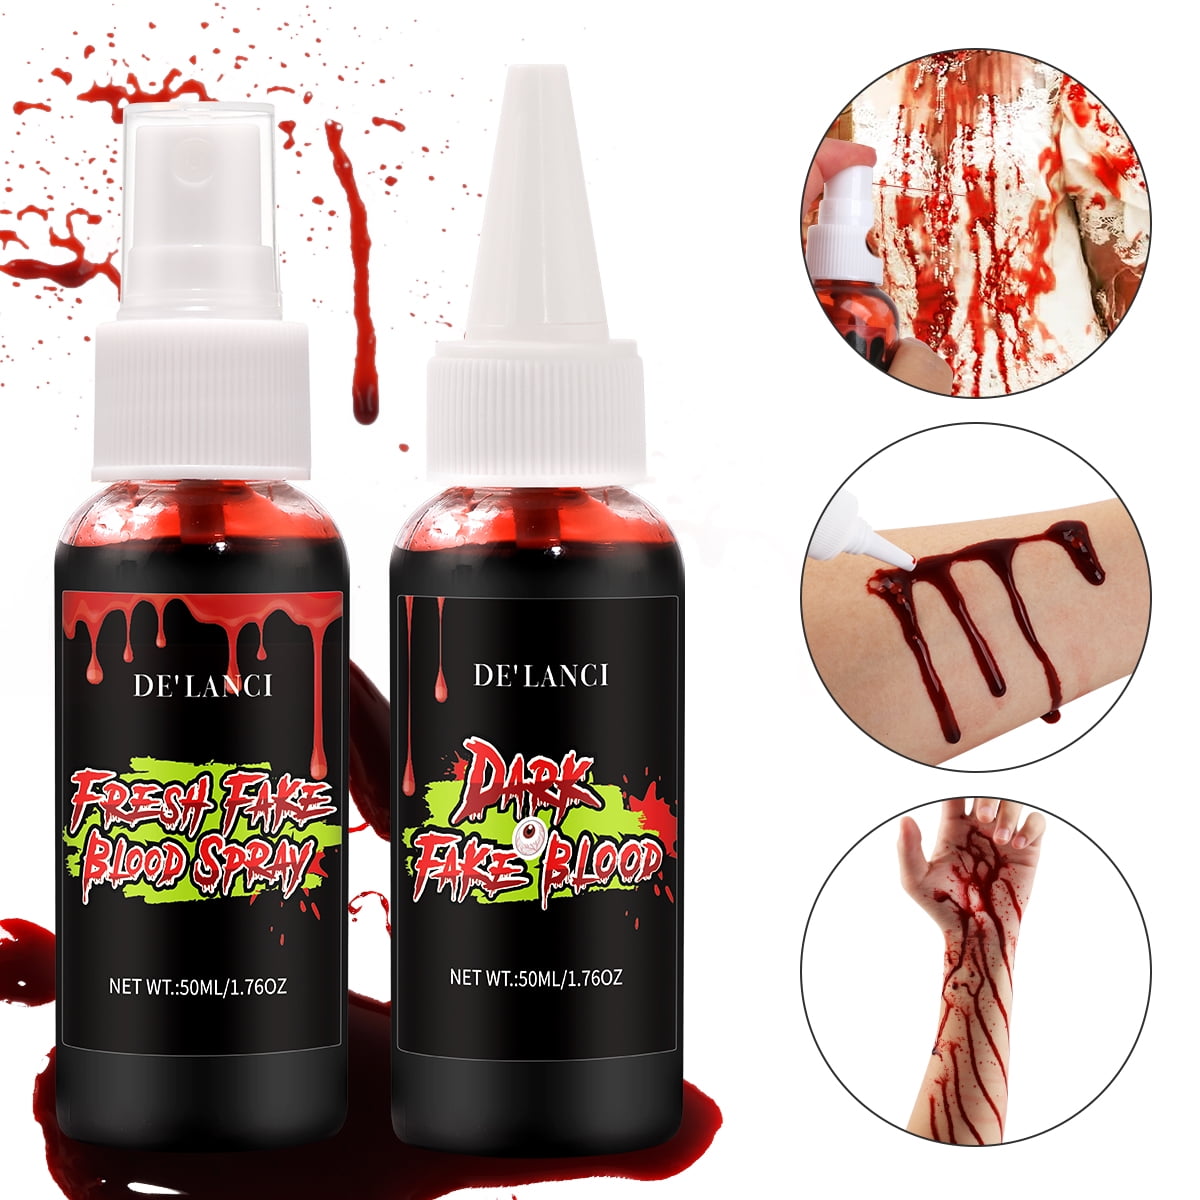 Spray faux sang - Spécial Halloween - SAGA Cosmetics